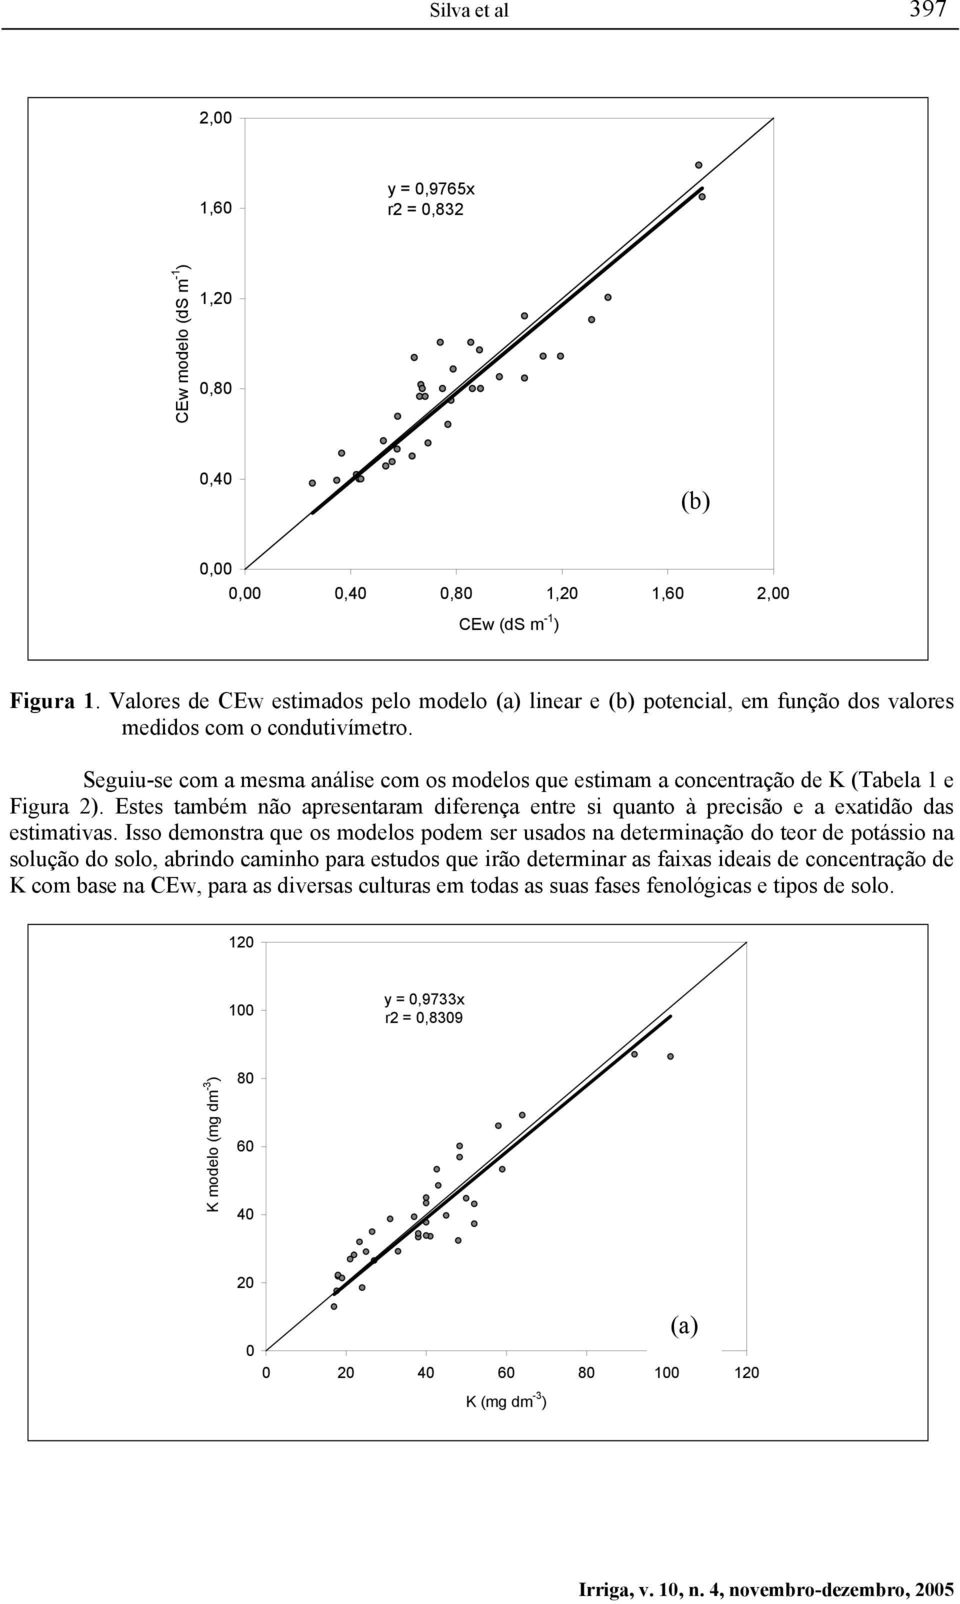 Seguiu-se com a mesma análise com os modelos que estimam a concentração de K (Tabela 1 e Figura 2).